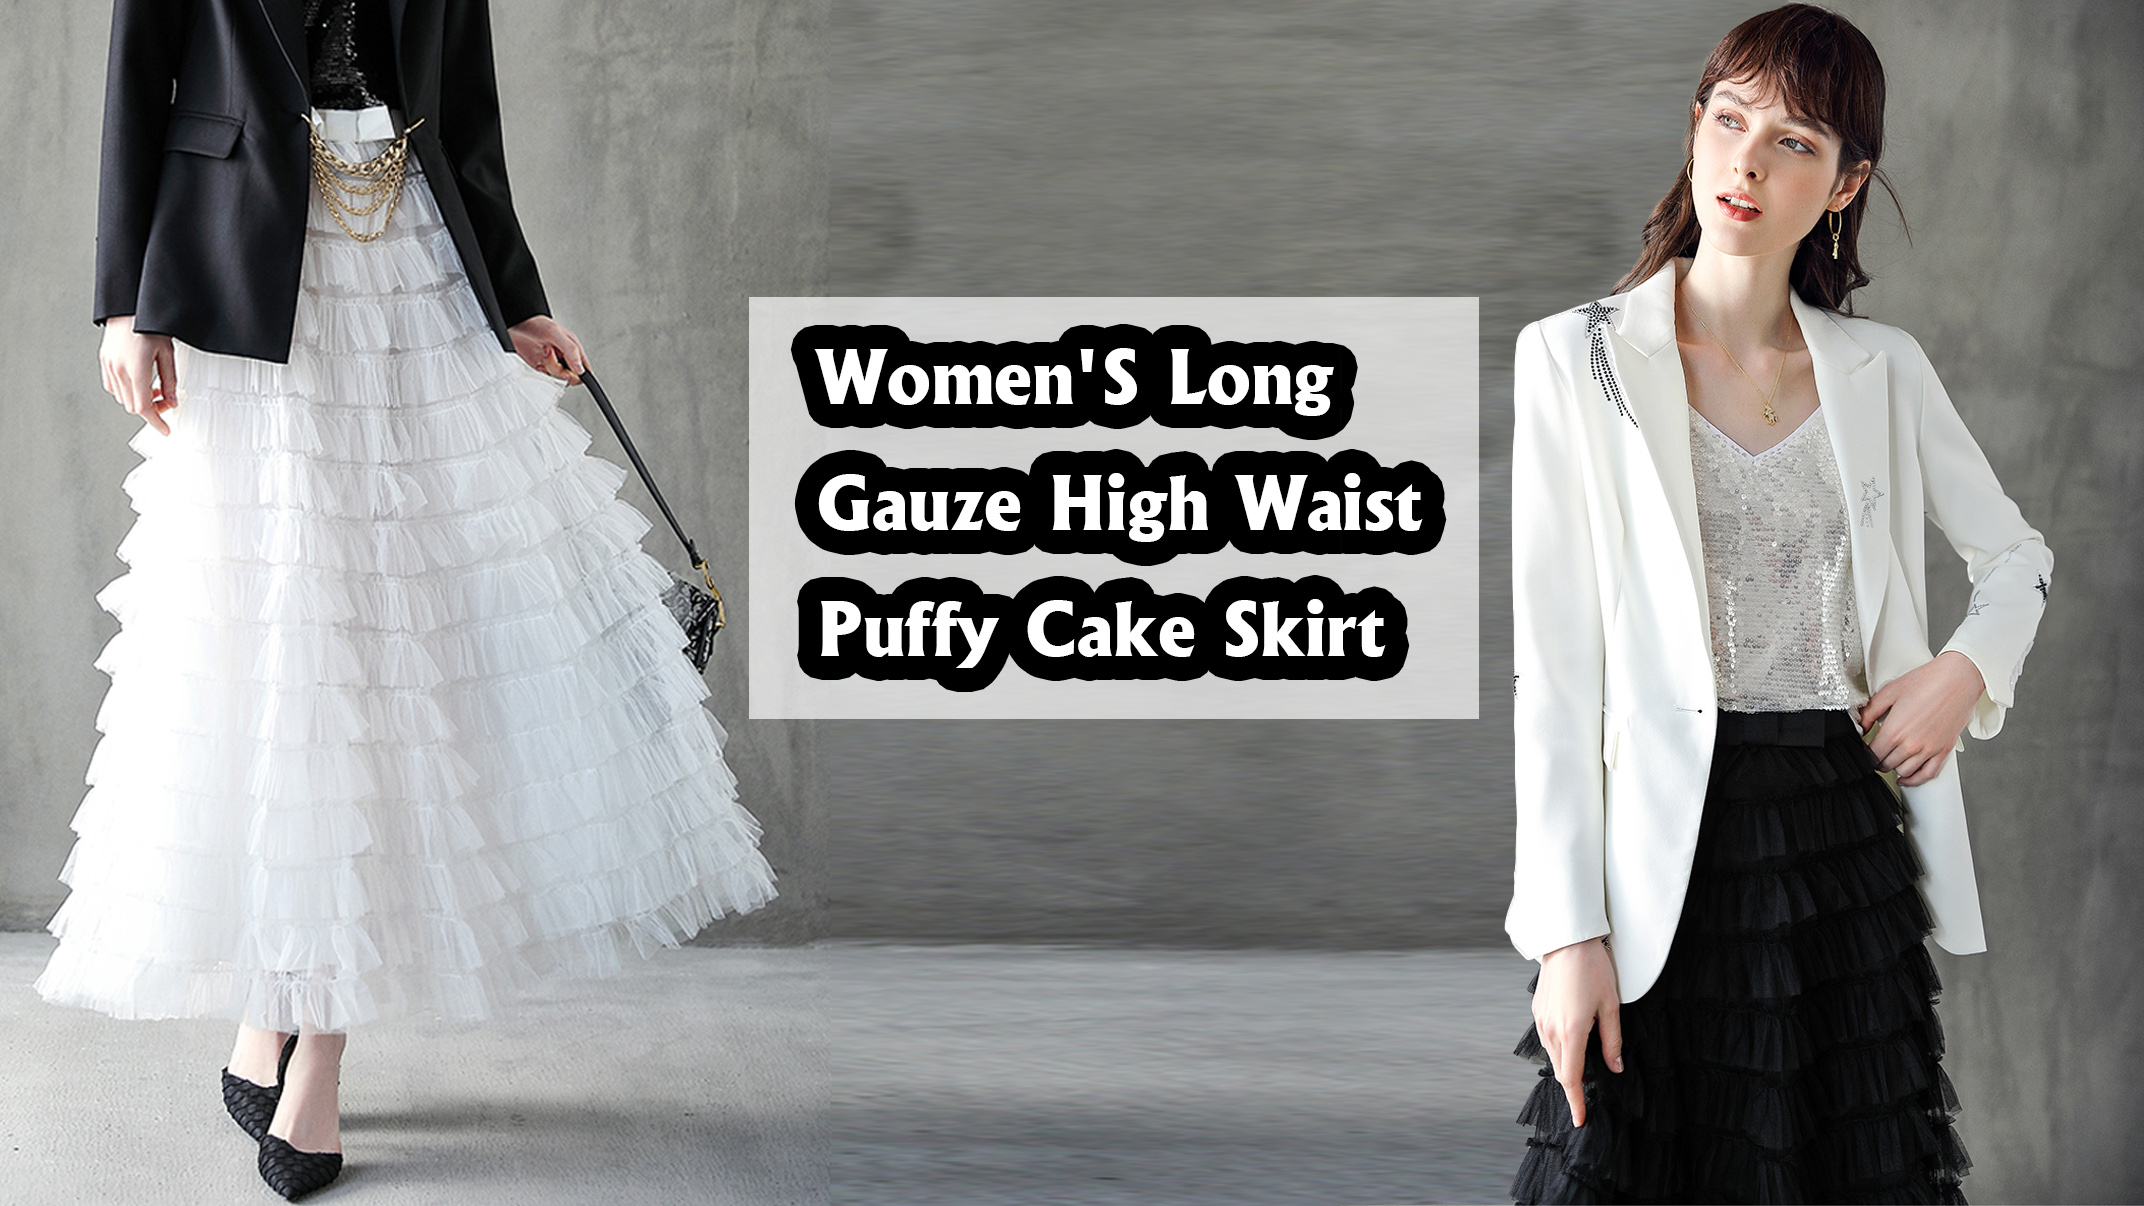 Lace High Waist Skirt For Women